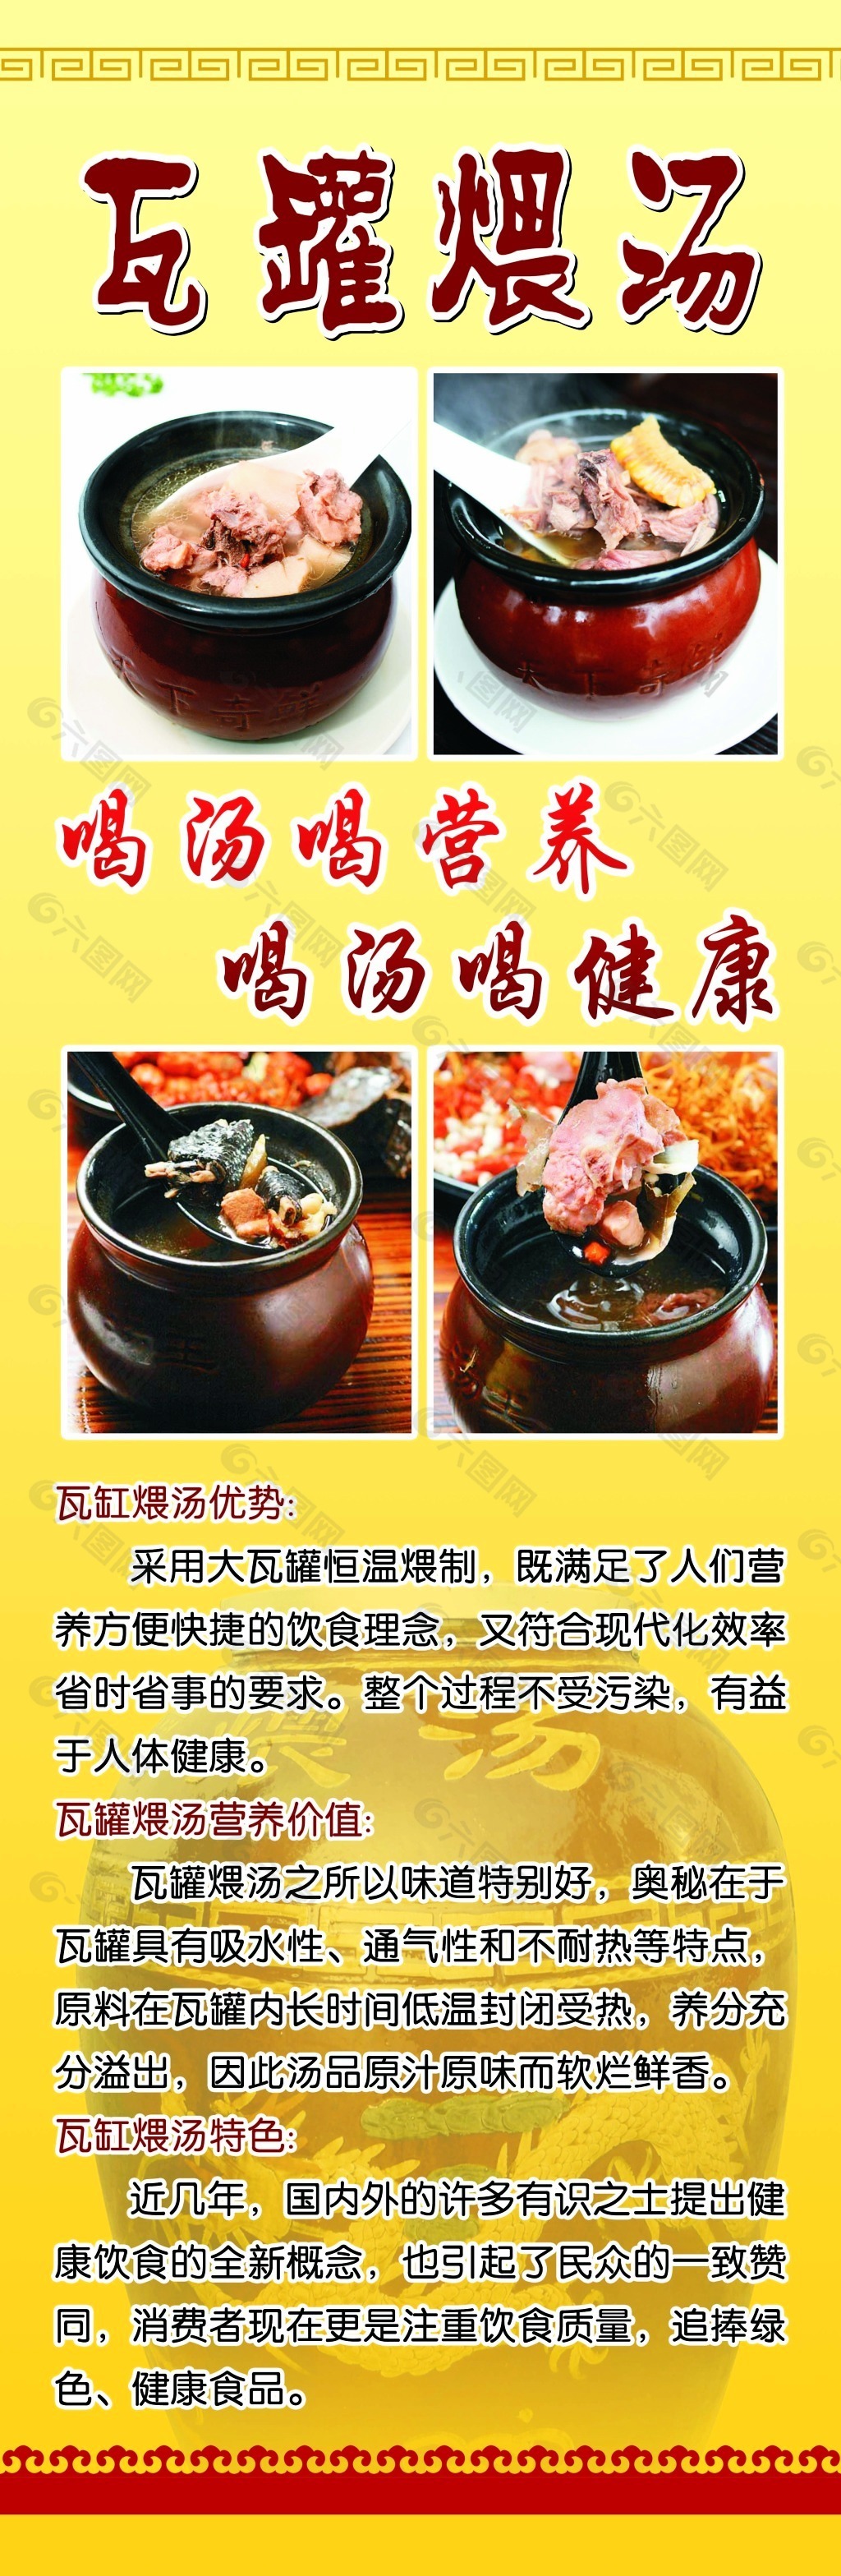 南昌瓦罐汤菜单图片素材-编号09087309-图行天下